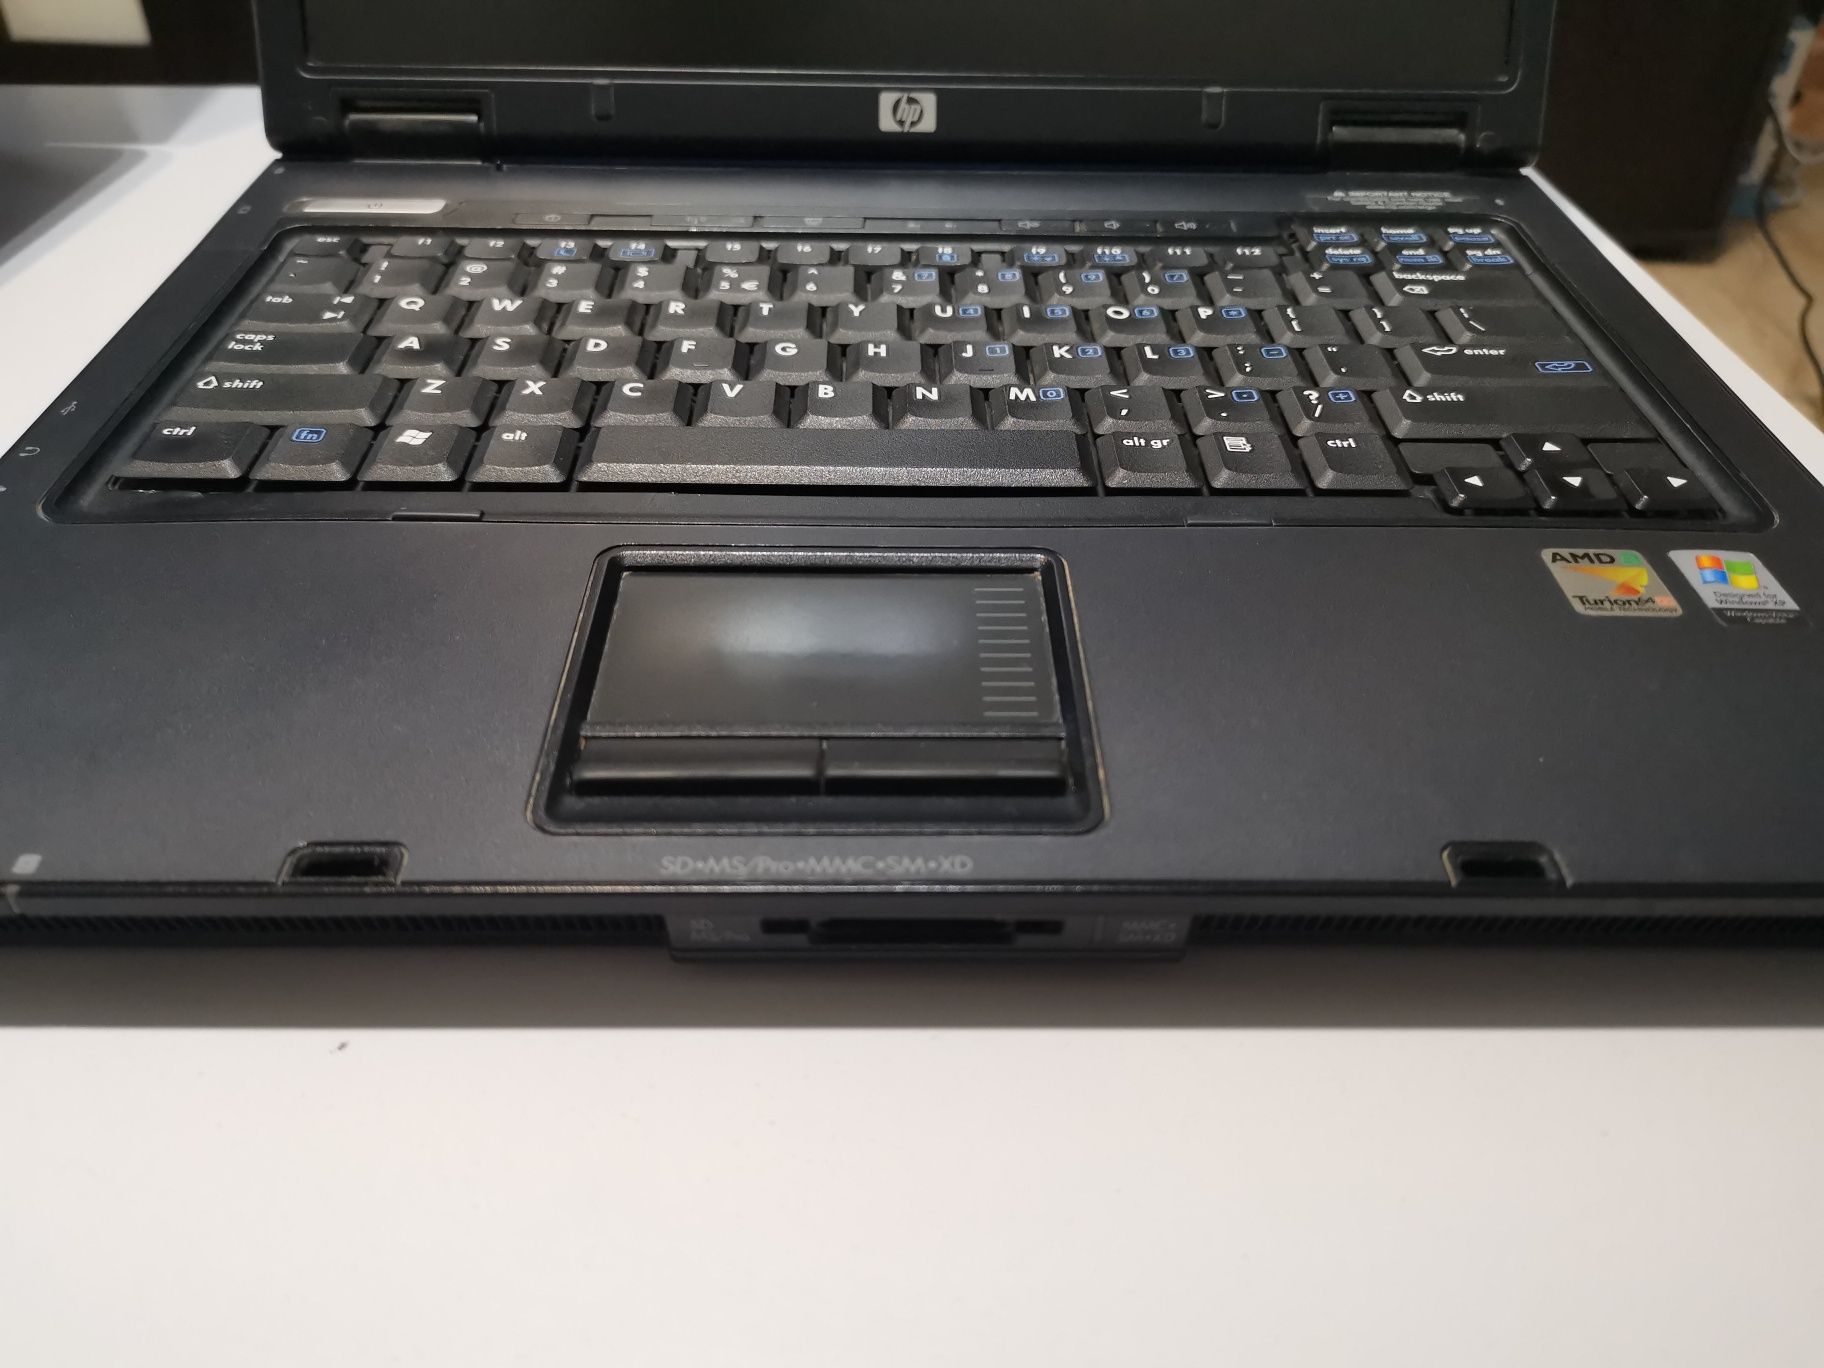 Laptop HP Compaq nx 6325-vând laptop nx6325